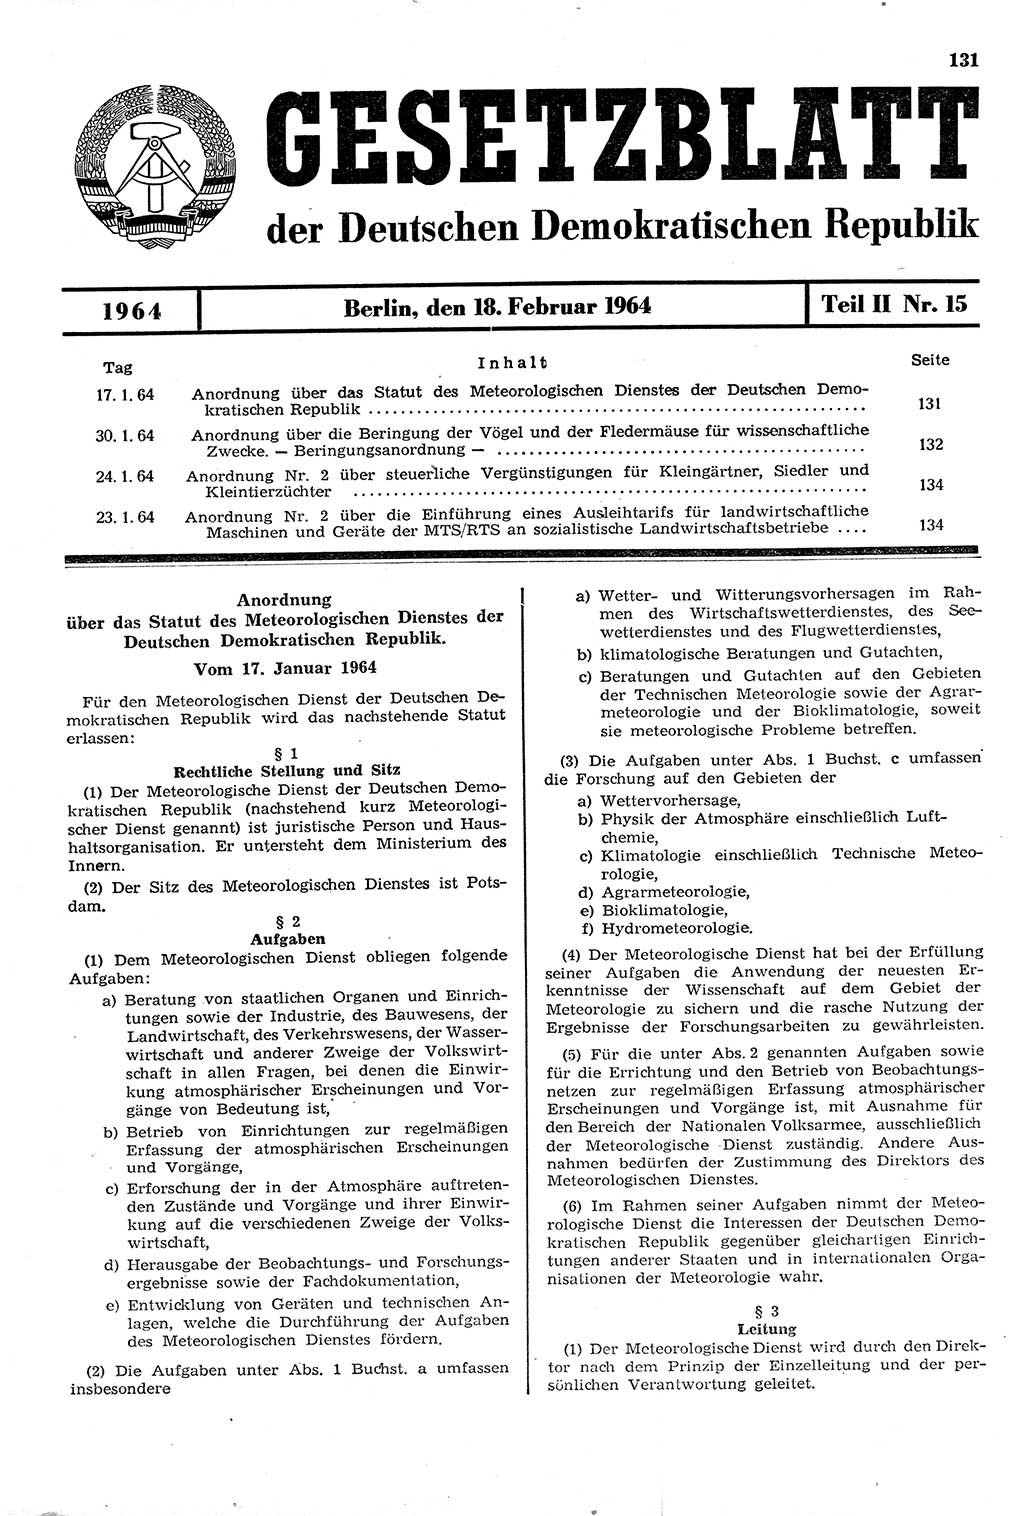 Gesetzblatt (GBl.) der Deutschen Demokratischen Republik (DDR) Teil ⅠⅠ 1964, Seite 131 (GBl. DDR ⅠⅠ 1964, S. 131)